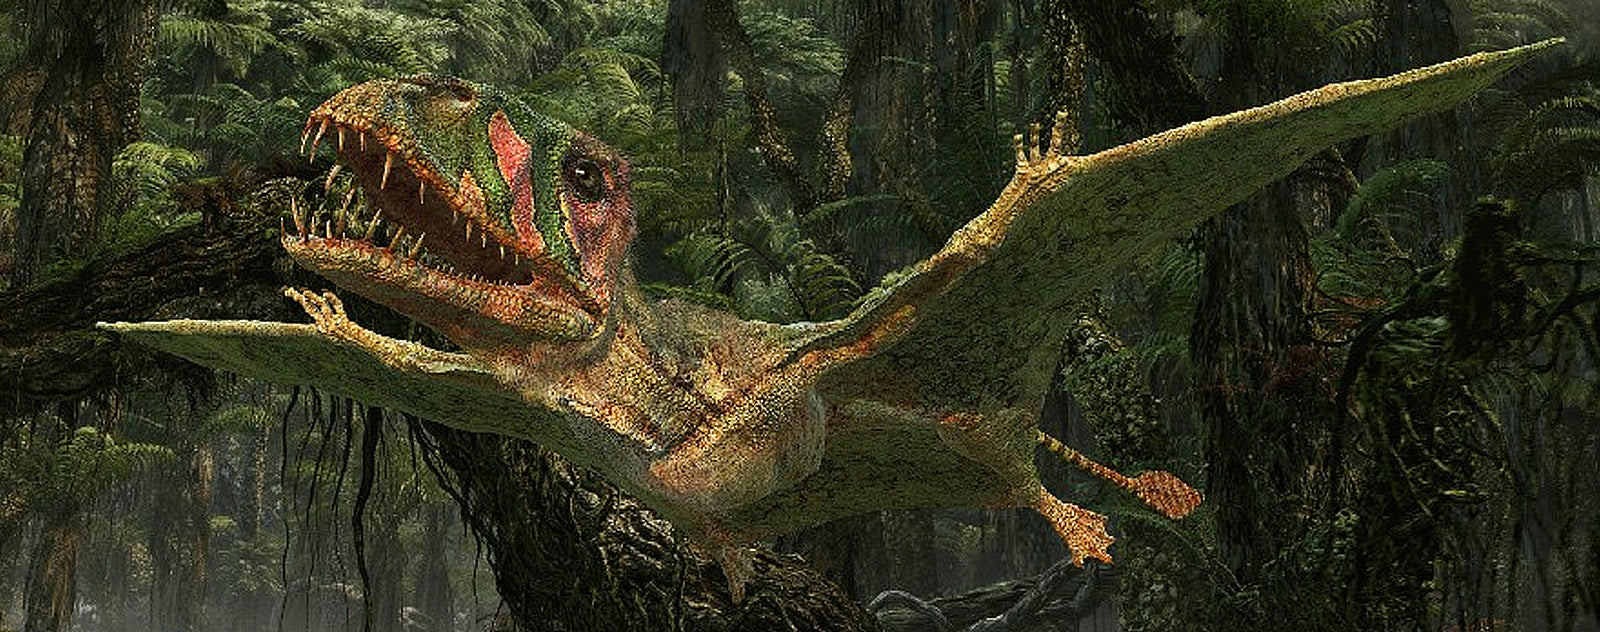 Dimorphodon Foret